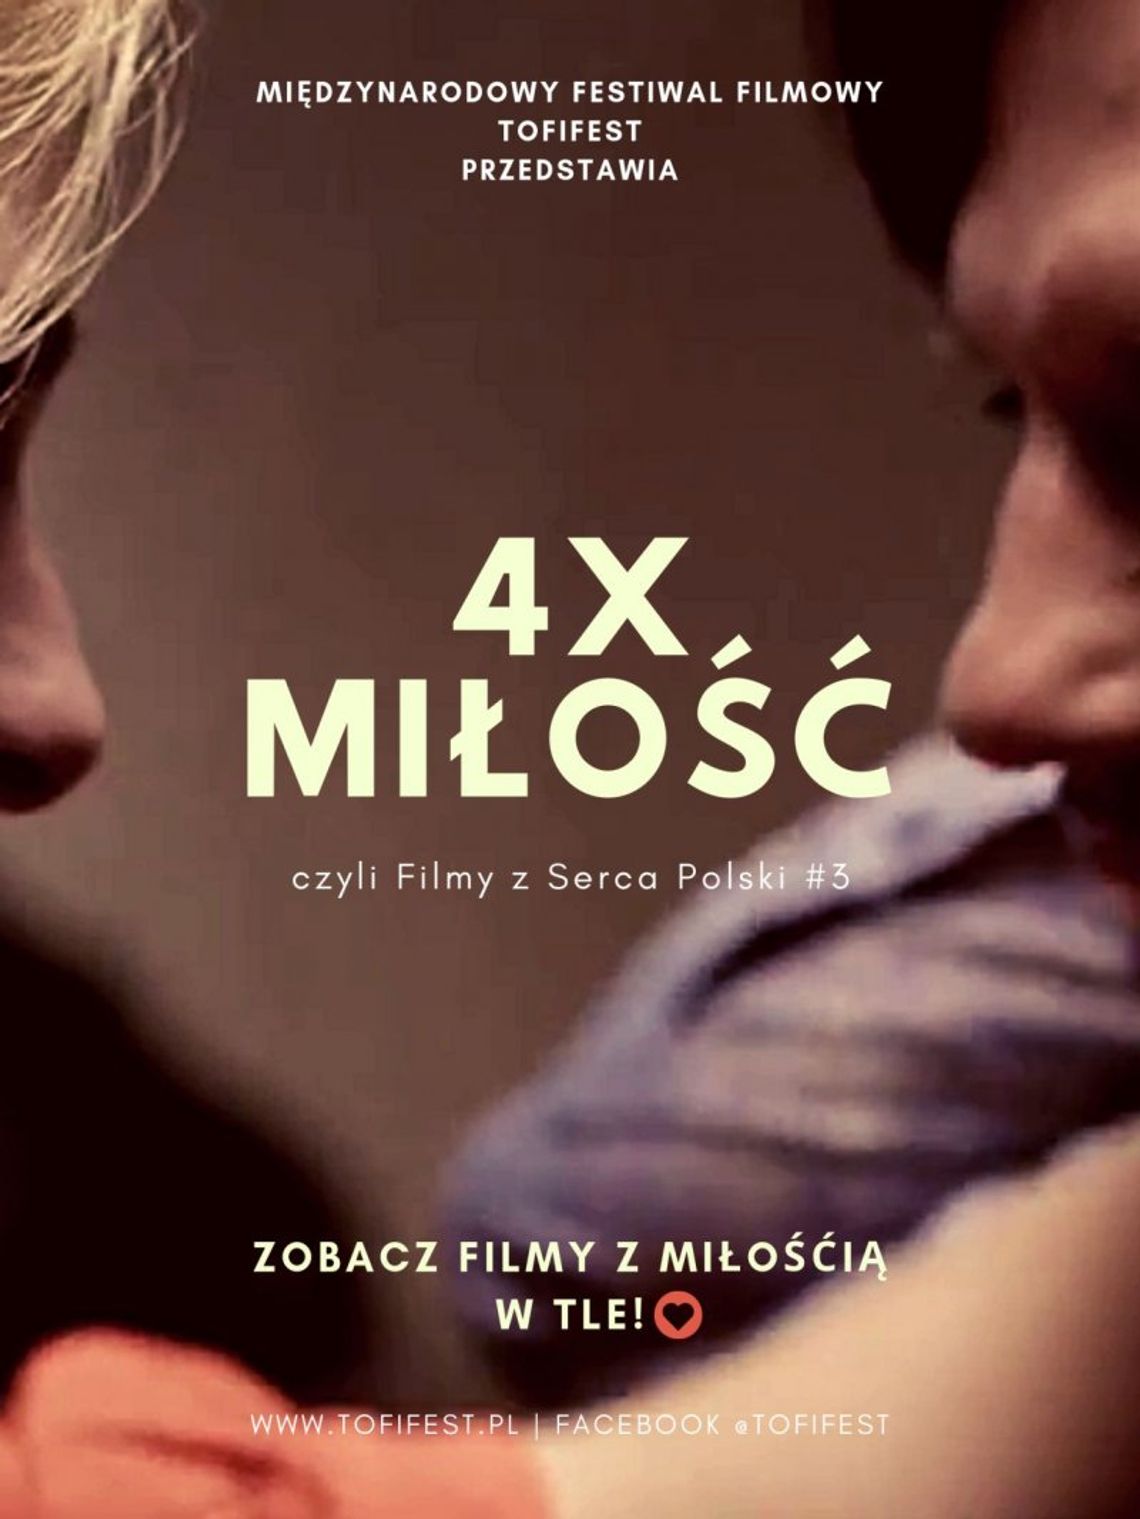 TOFIFEST - Filmy z Serca Polski #3 czyli “4x Miłość”